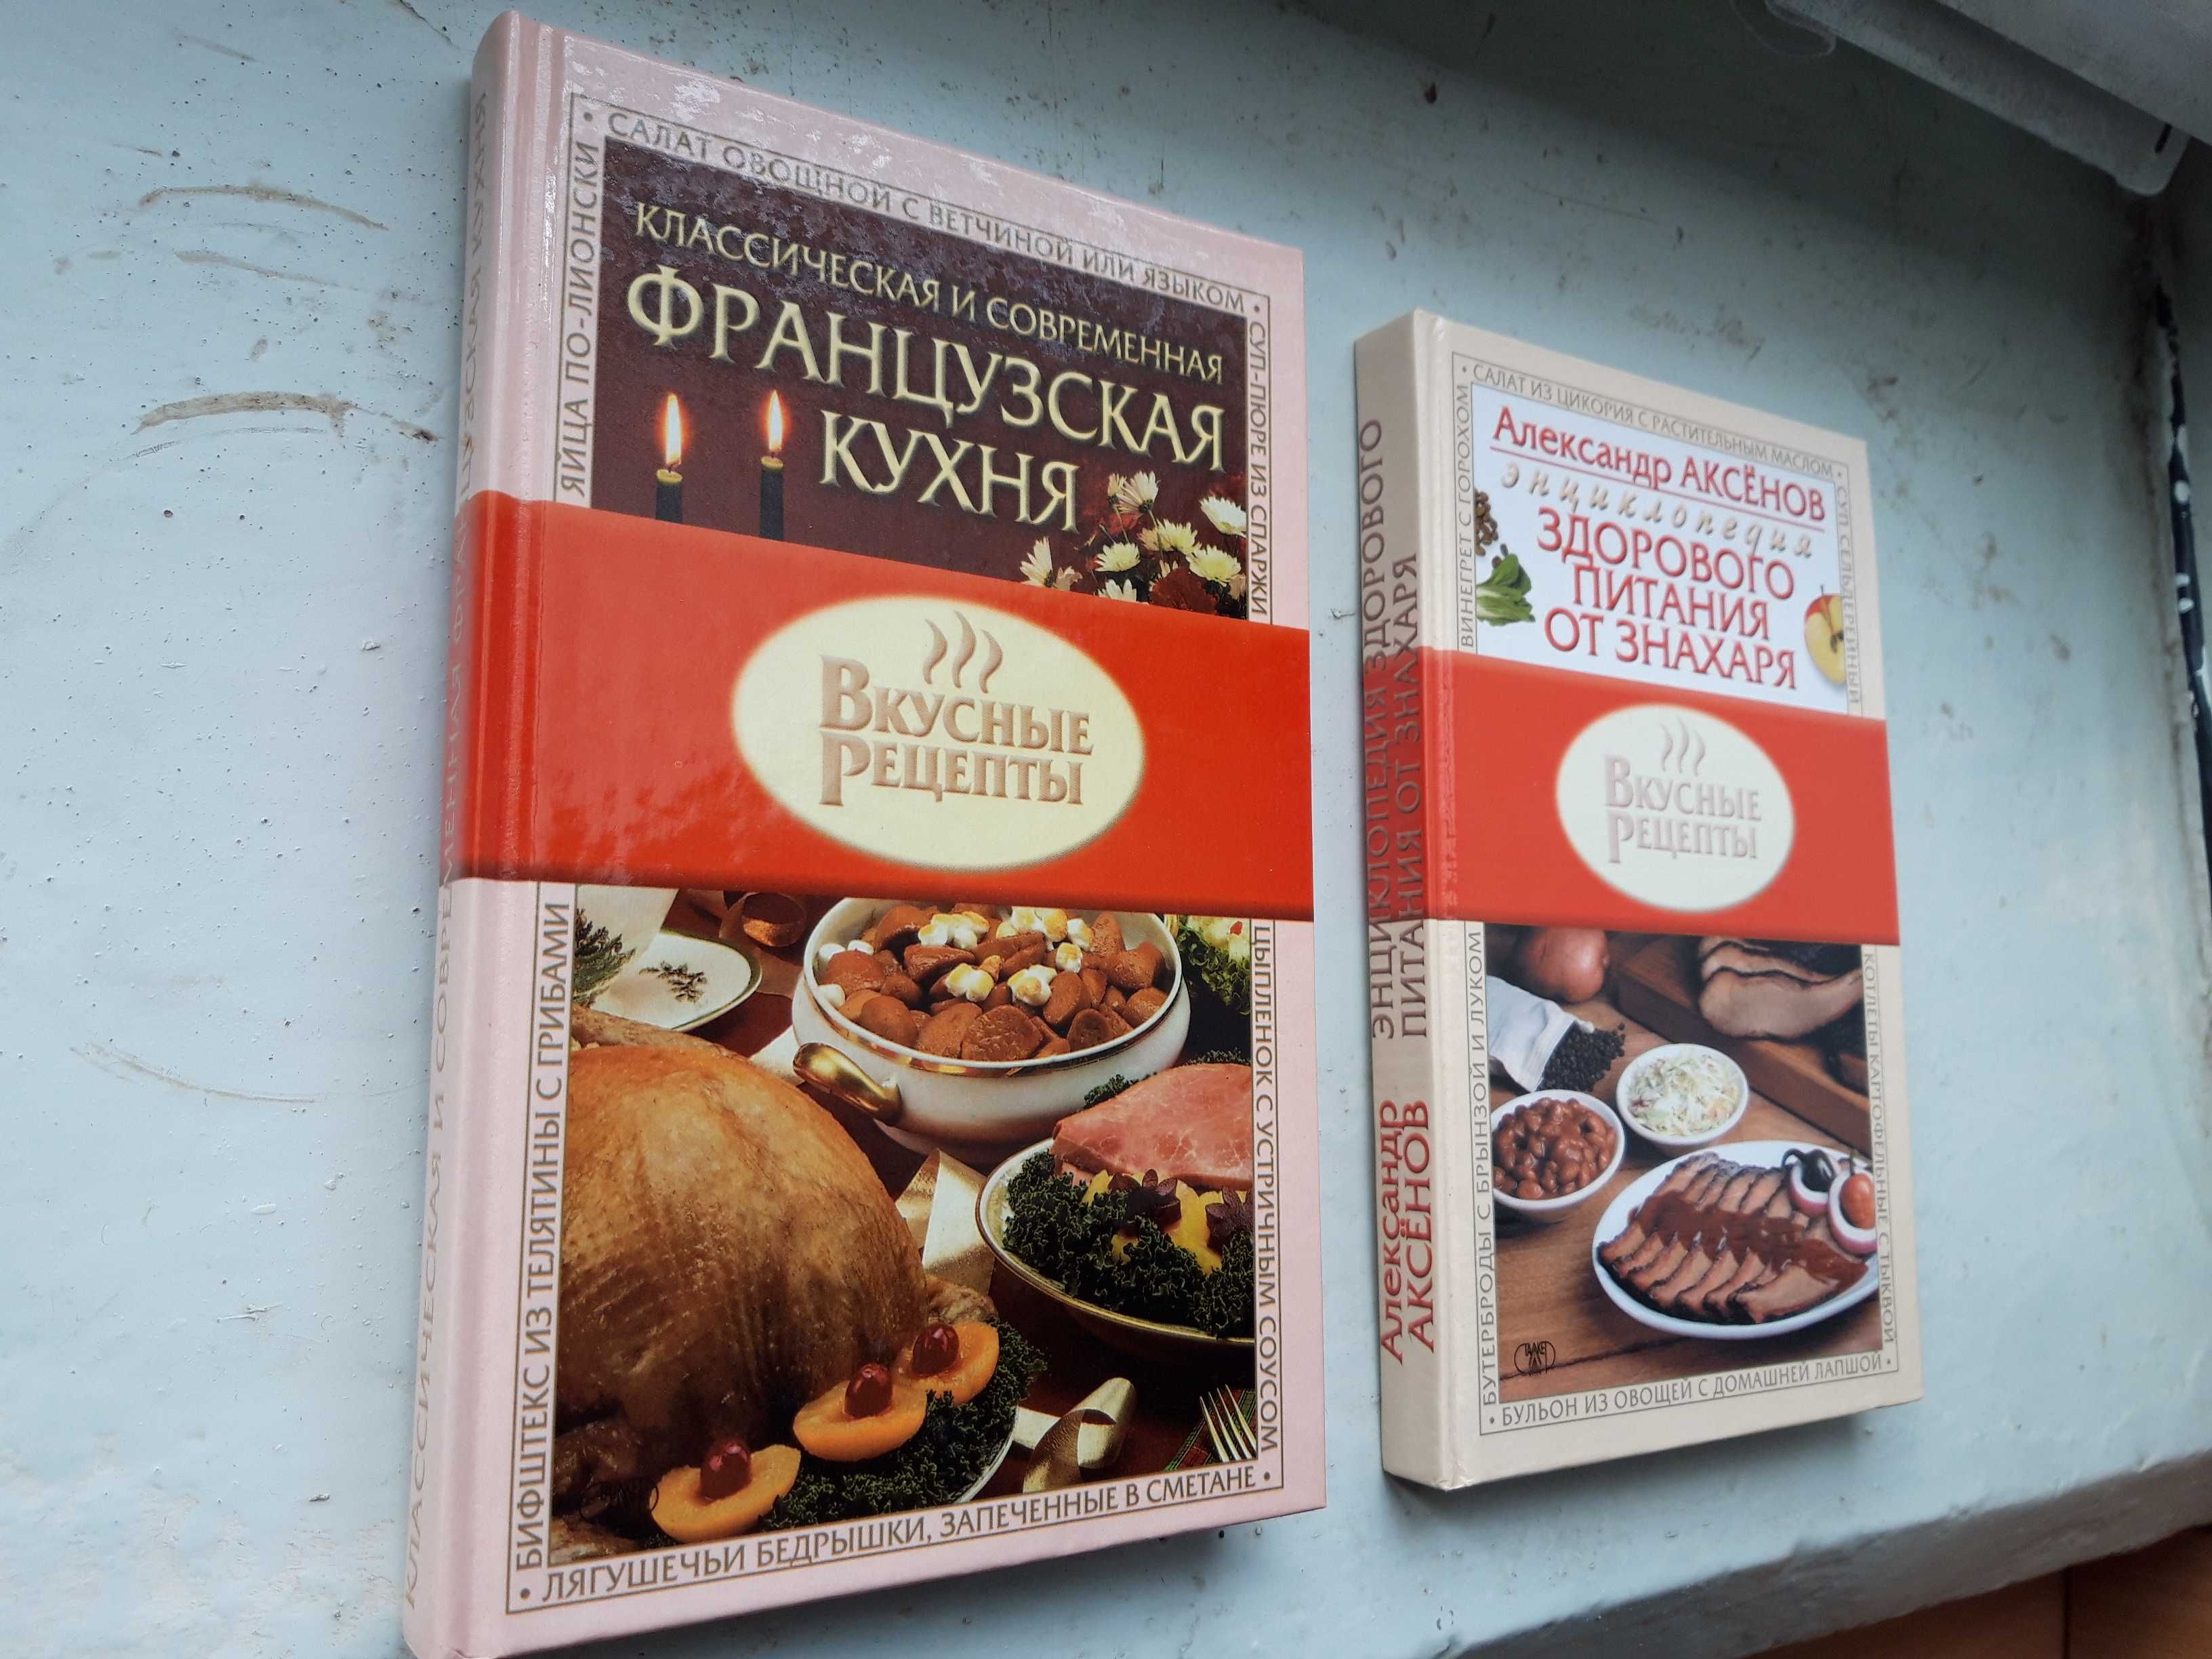 Вкусные рецепты (Издательство СТАЛКЕР, Донецк, 2003, 2004)